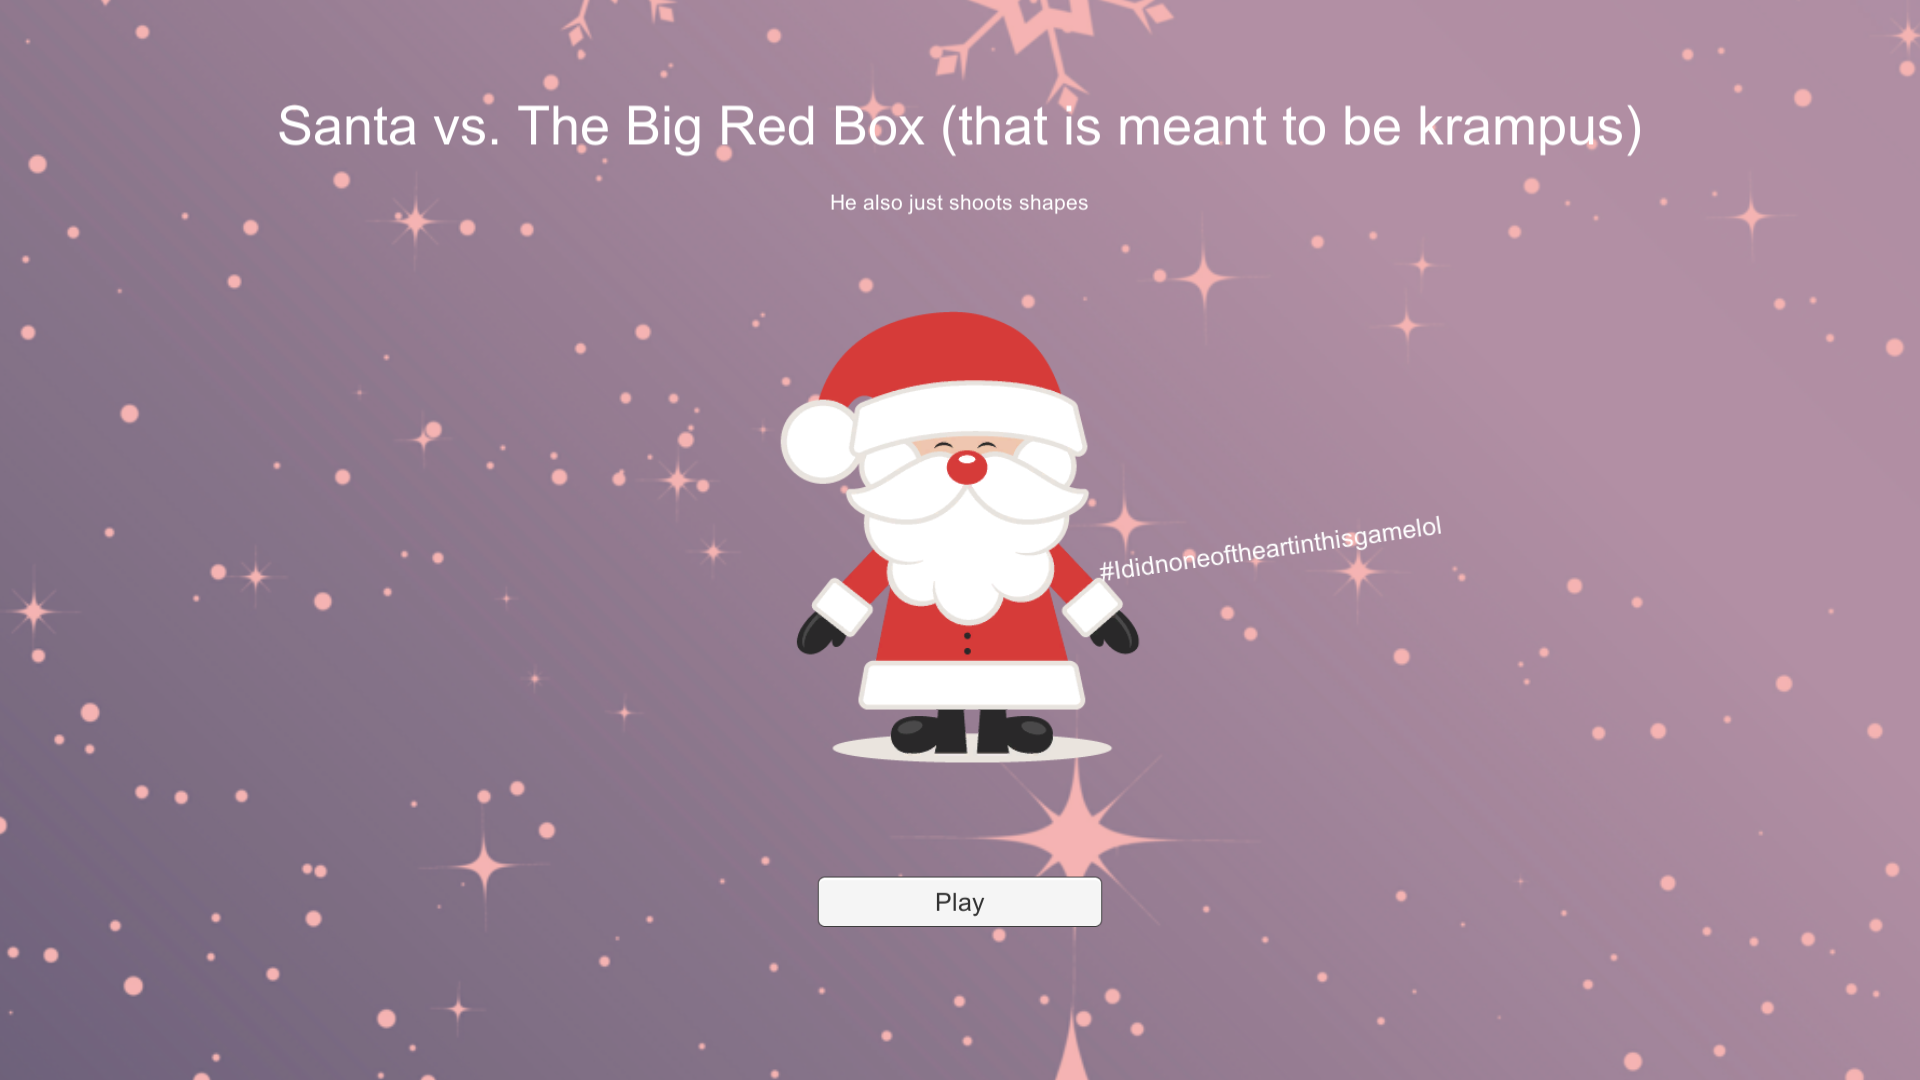 Santa vs The Red Box of Krampus